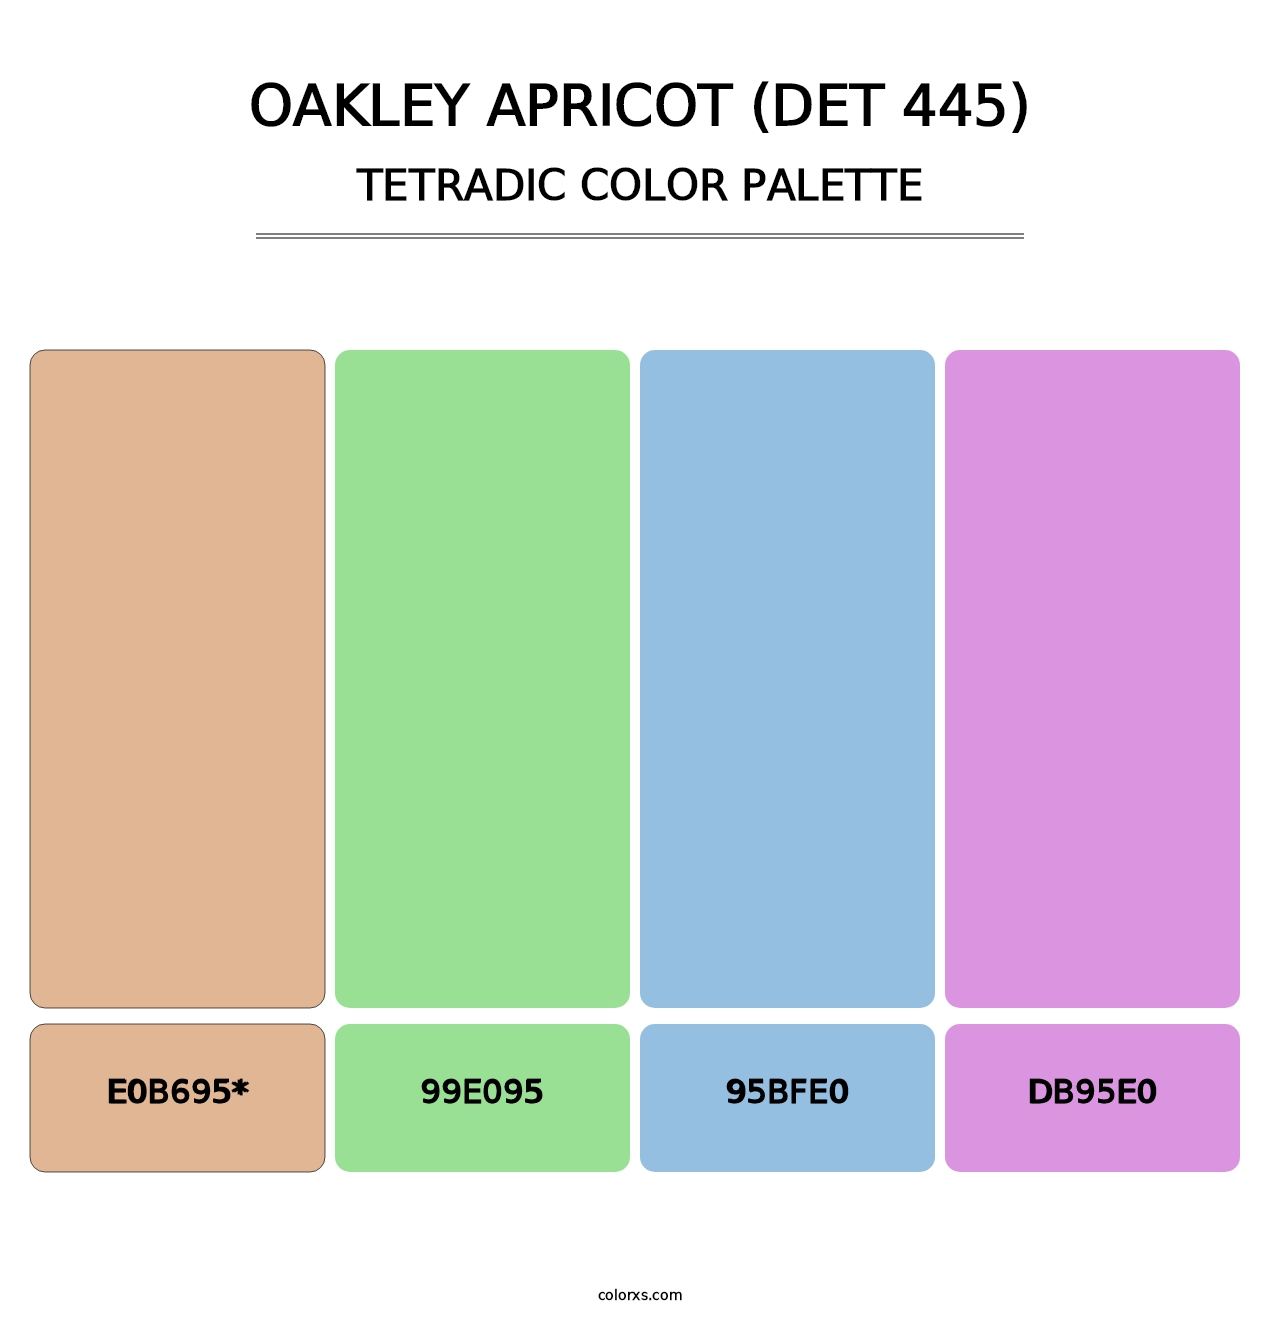 Oakley Apricot (DET 445) - Tetradic Color Palette